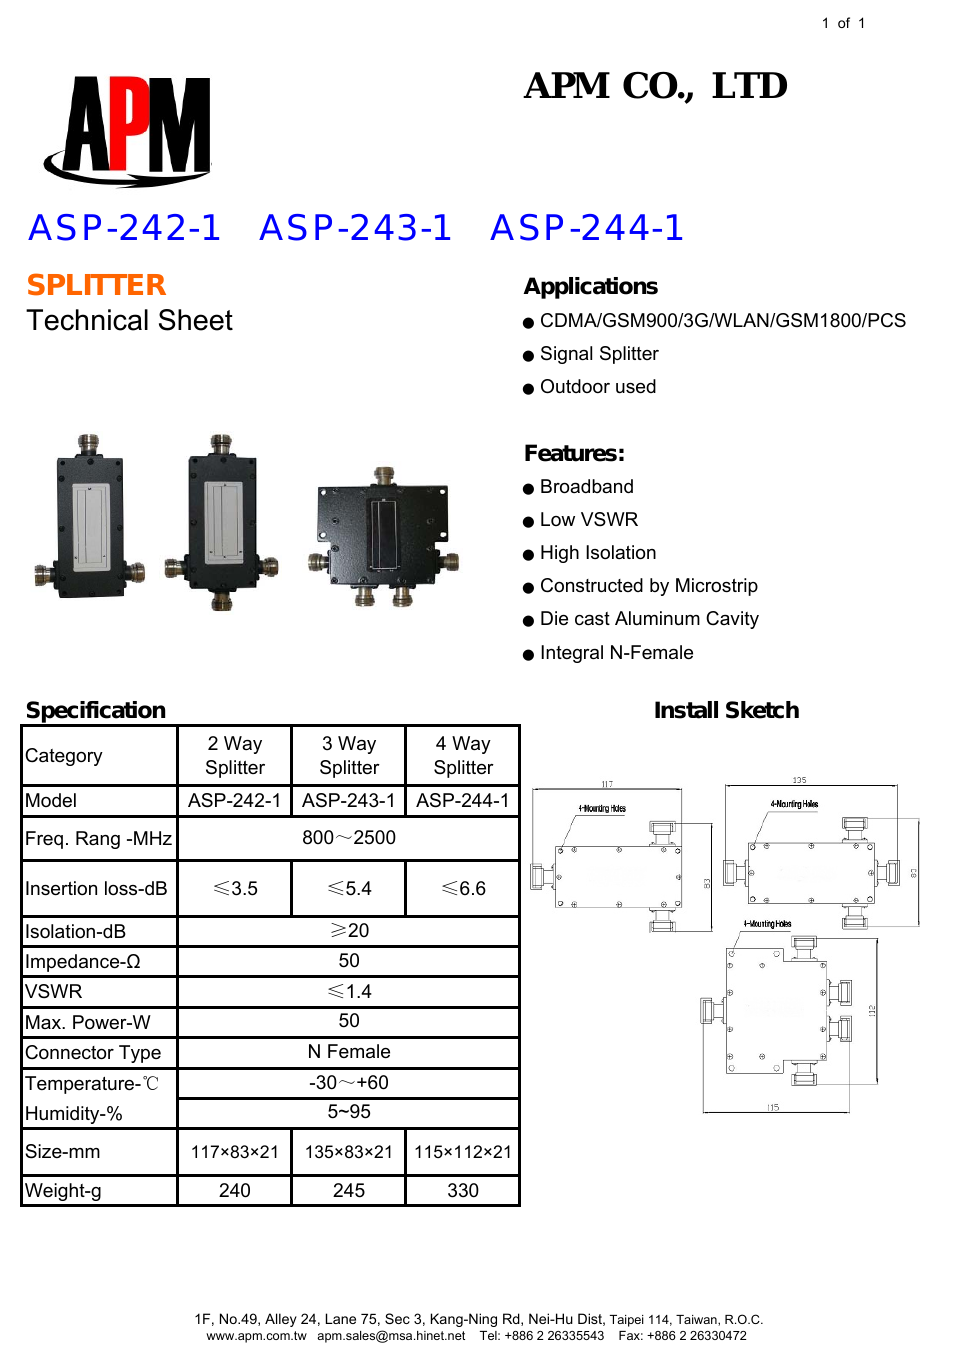 ASP-244-1